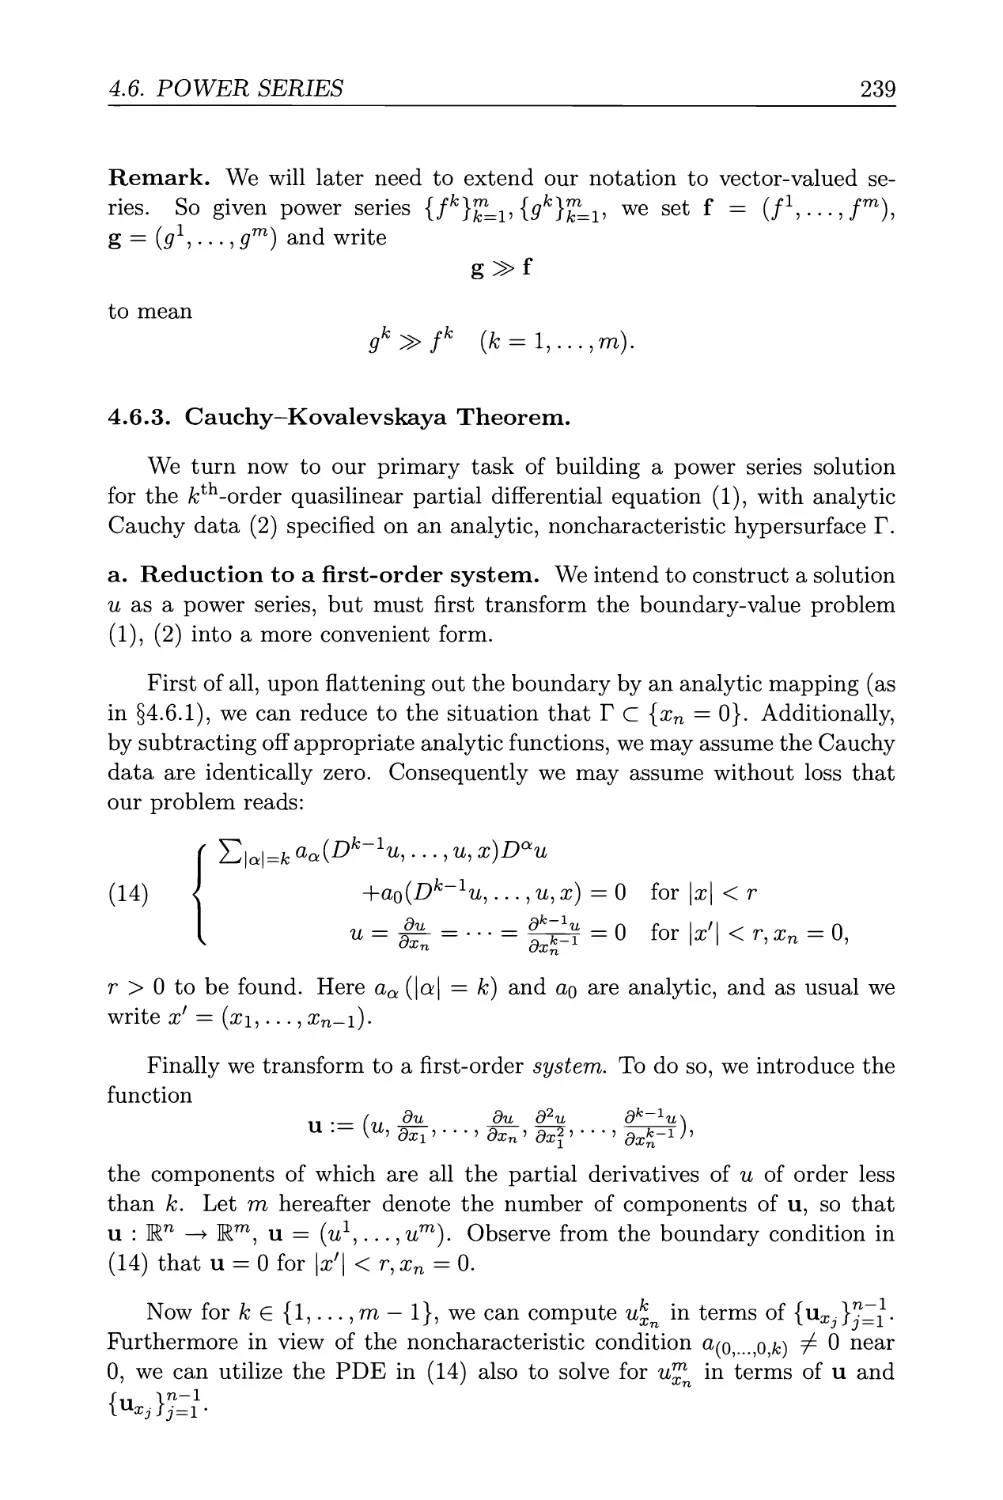 4.6.3. Cauchy-Kovalevskaya Theorem